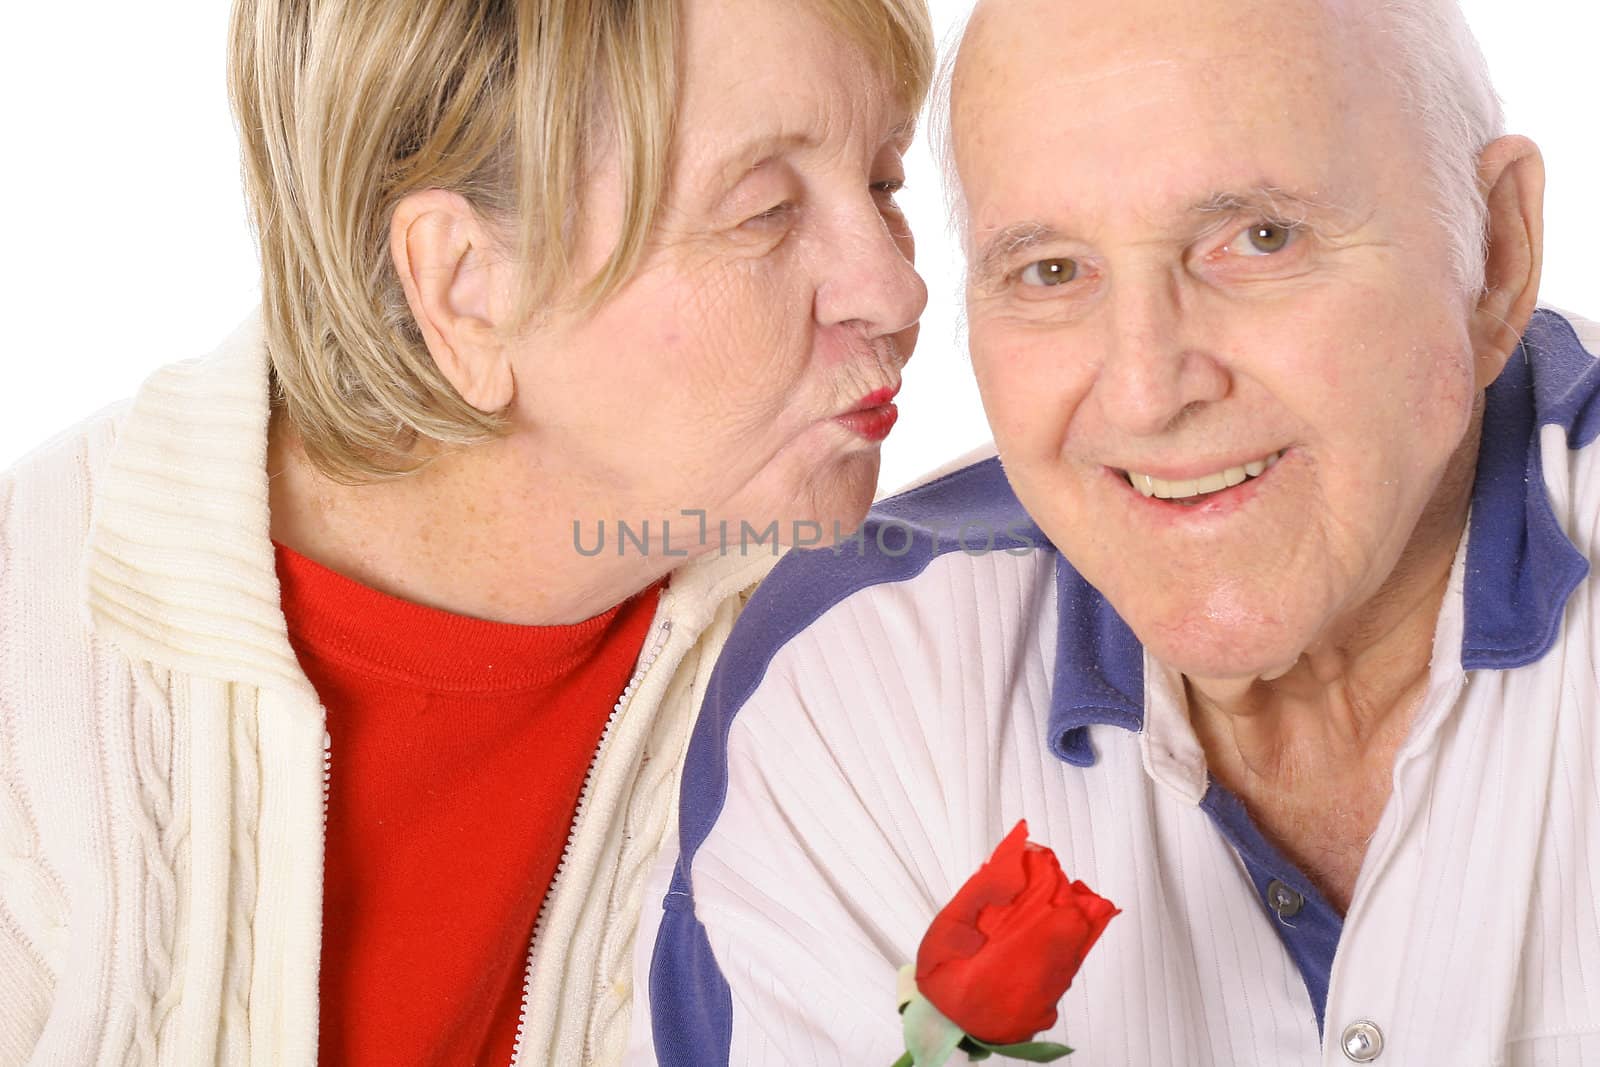 seniors valentines kiss